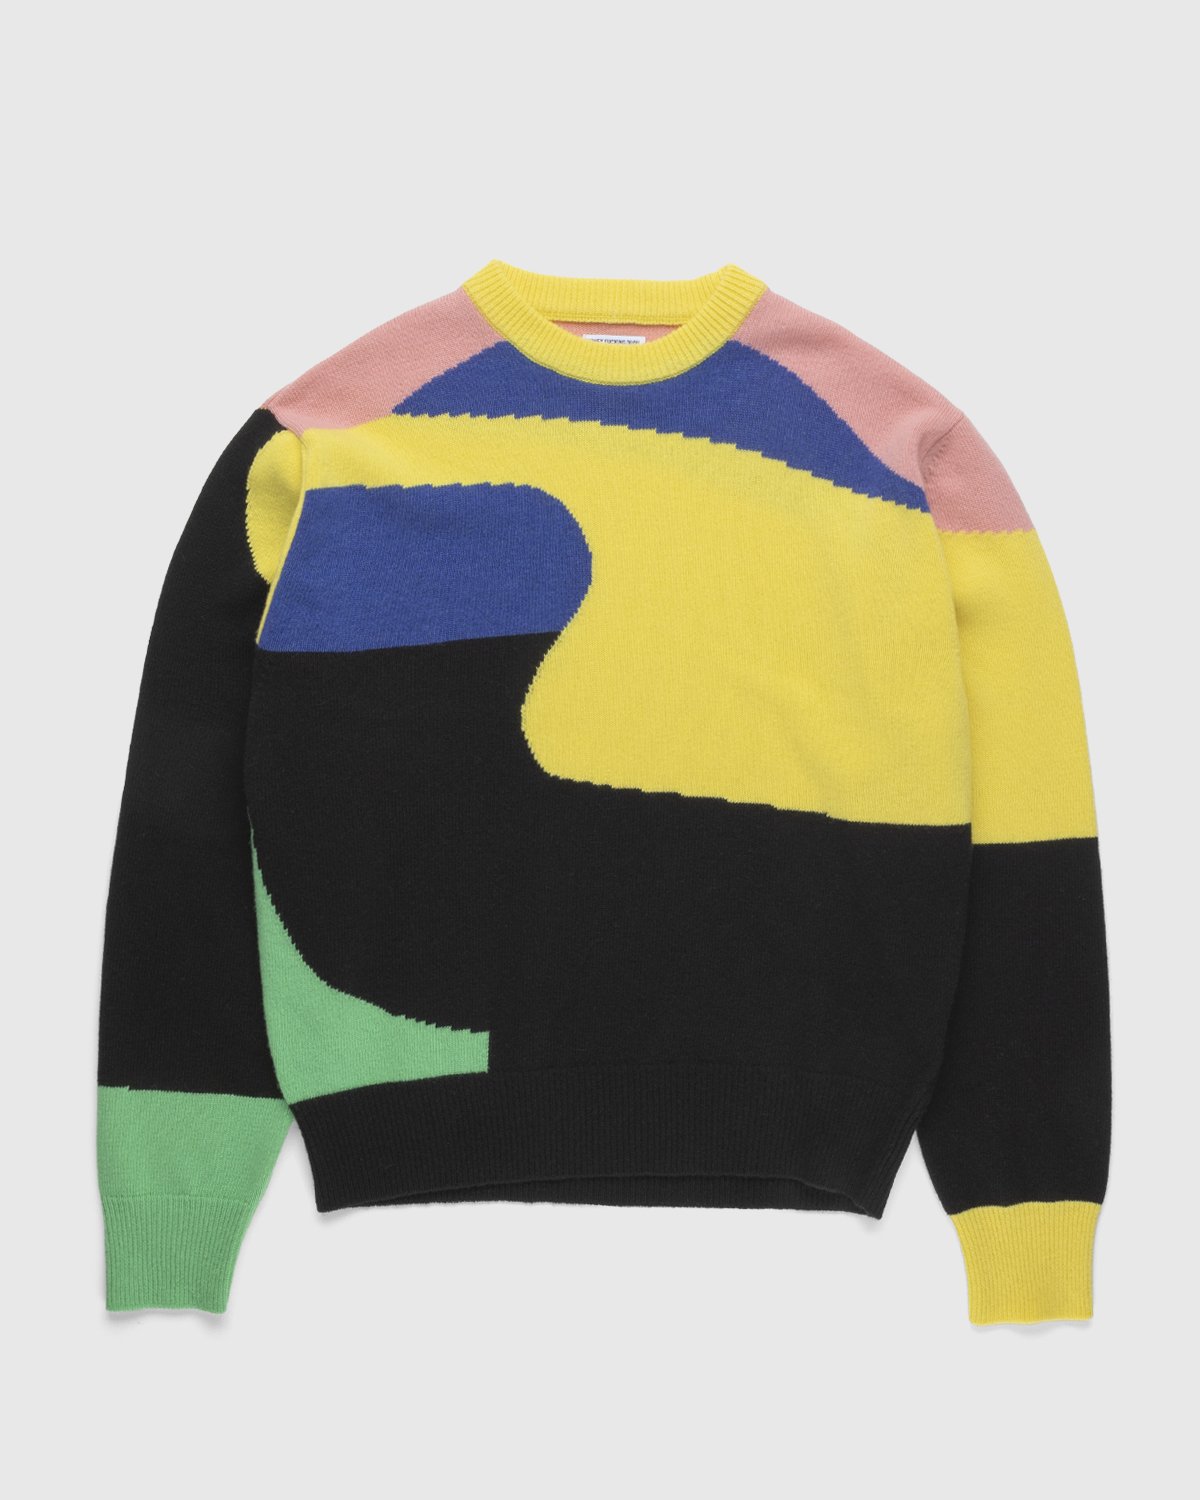 Honey Fucking Dijon x Eli Avaf - Crewneck Knitted Sweater - Clothing - Multi - Image 1